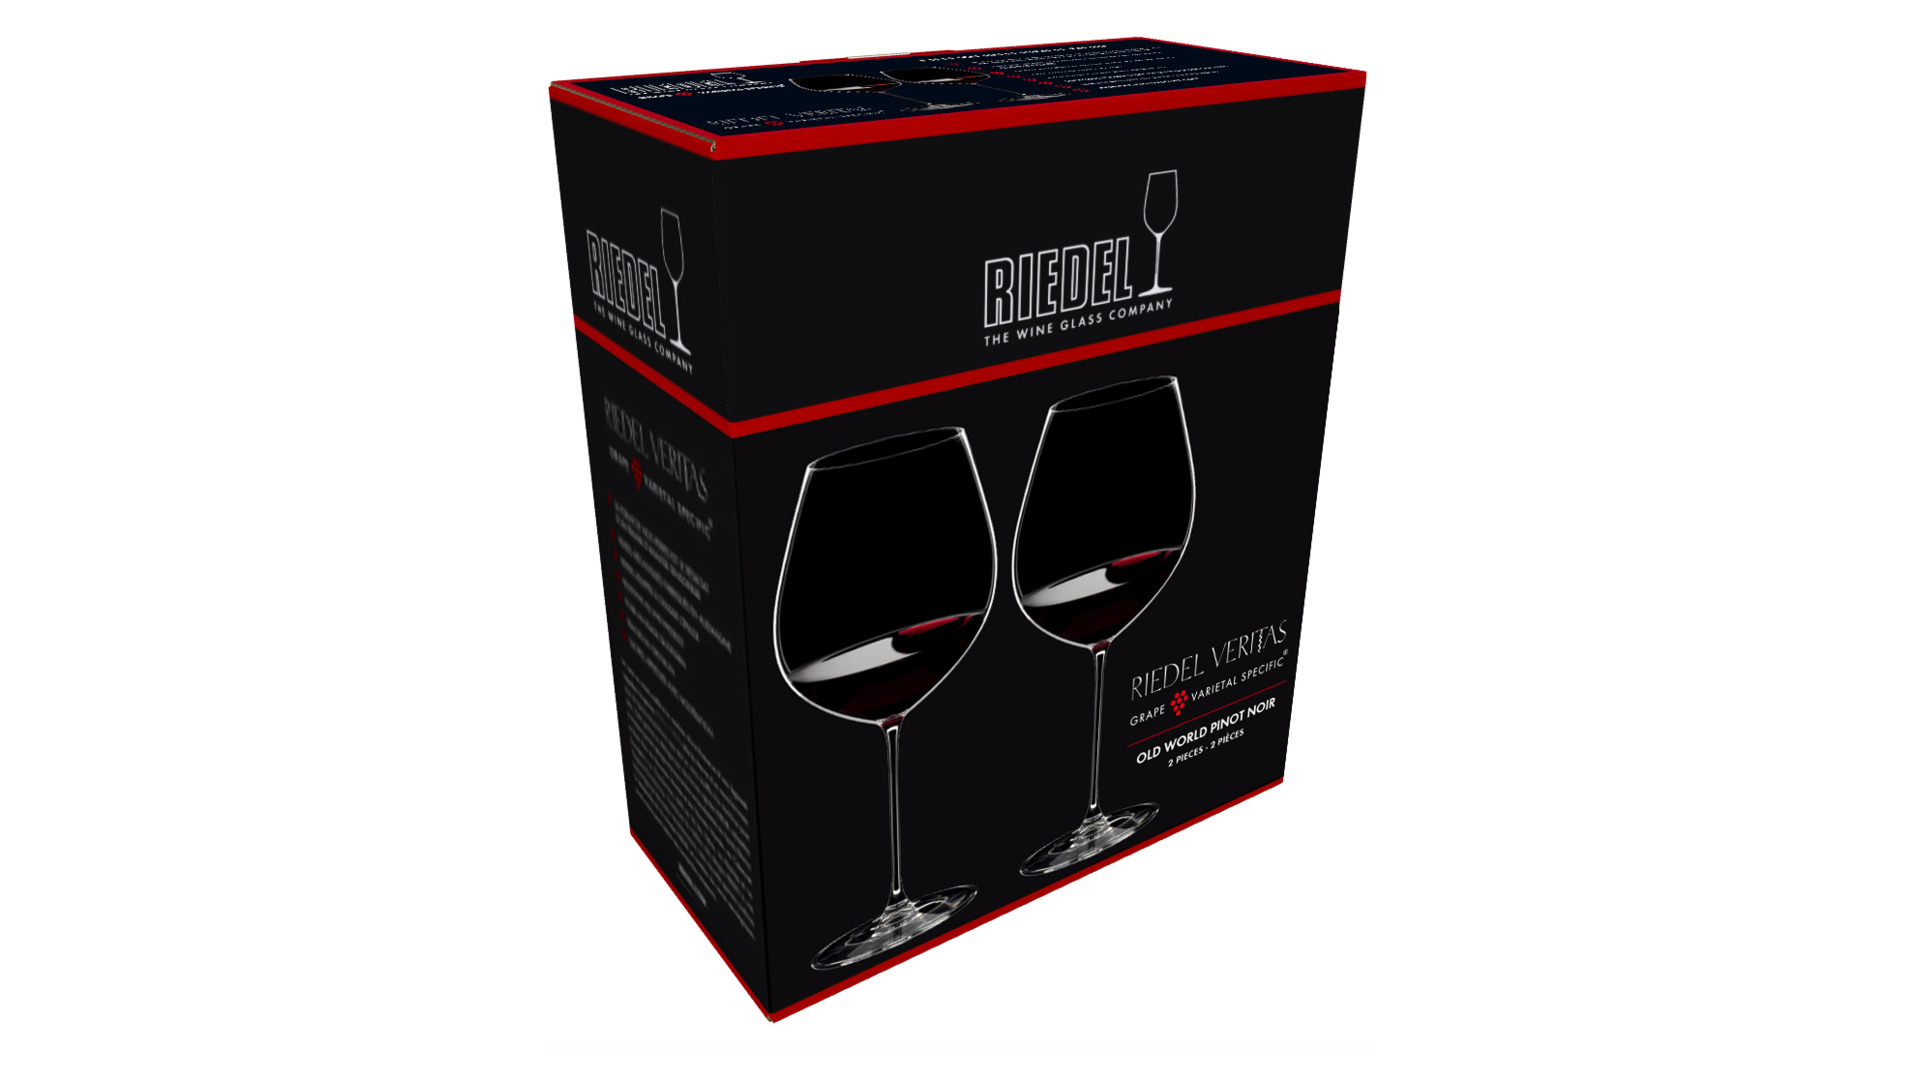 Набор бокалов для красного вина Riedel Veritas Old World Pinot Noir 738мл, 2шт, стекло хрустальное